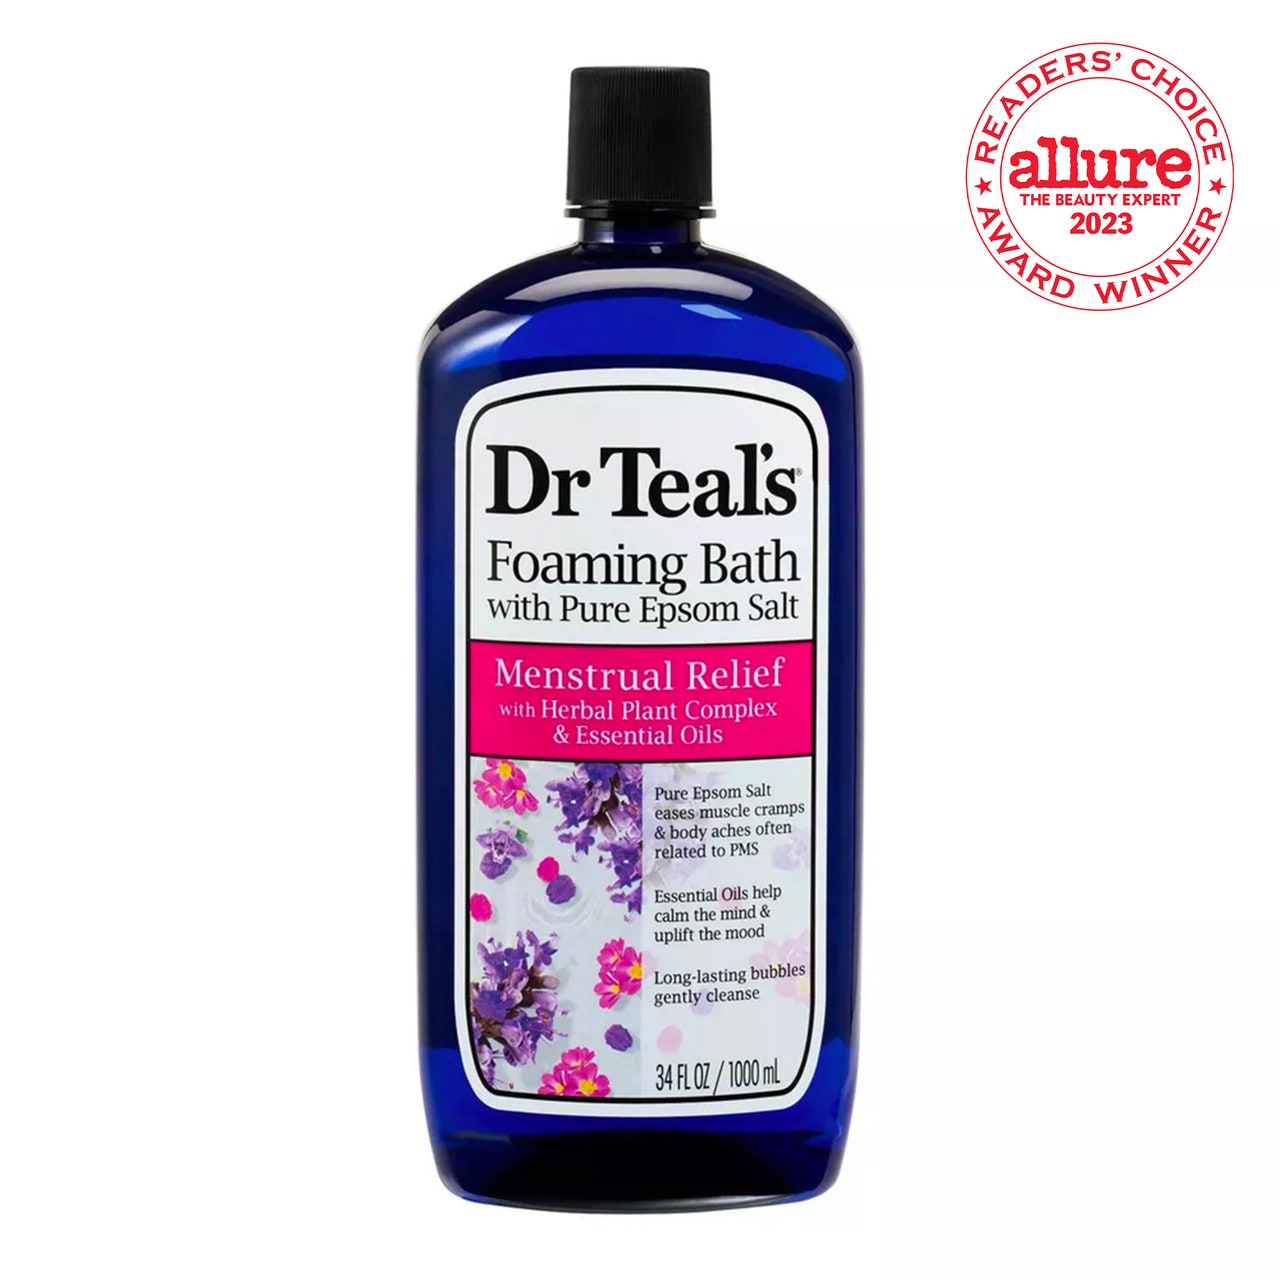 Dr Teal's Foaming Bath Menstrual Relief with Herbal Plant Complex and Essential Oils Dunkelblaue Flasche mit weißem Etikett auf weißem Hintergrund mit RCA-Siegel in der oberen rechten Ecke